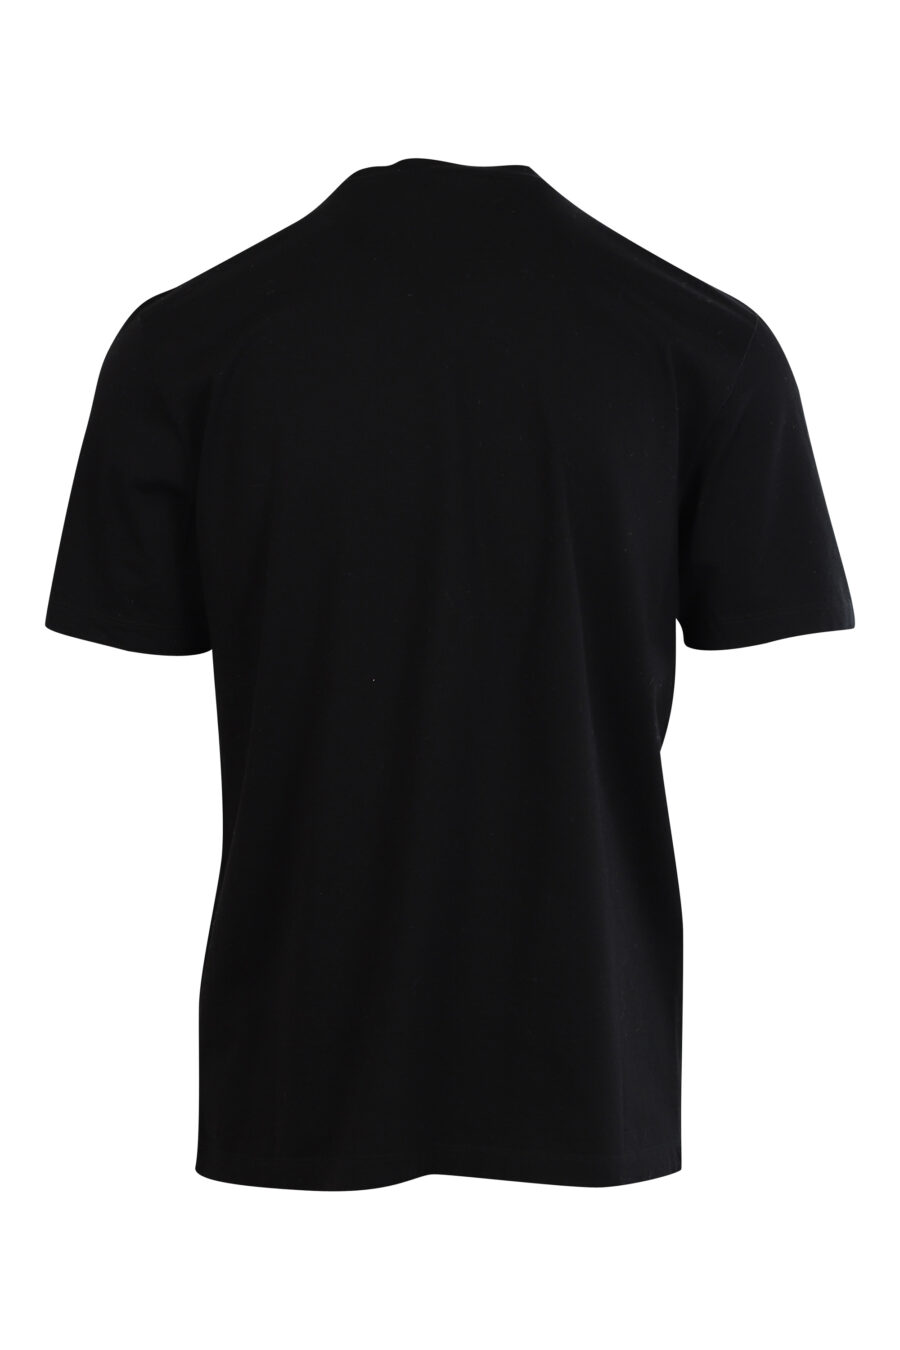 Schwarzes T-Shirt mit weißem Minilogo "bold" und orangefarbenem Blatt - 8052134990216 2